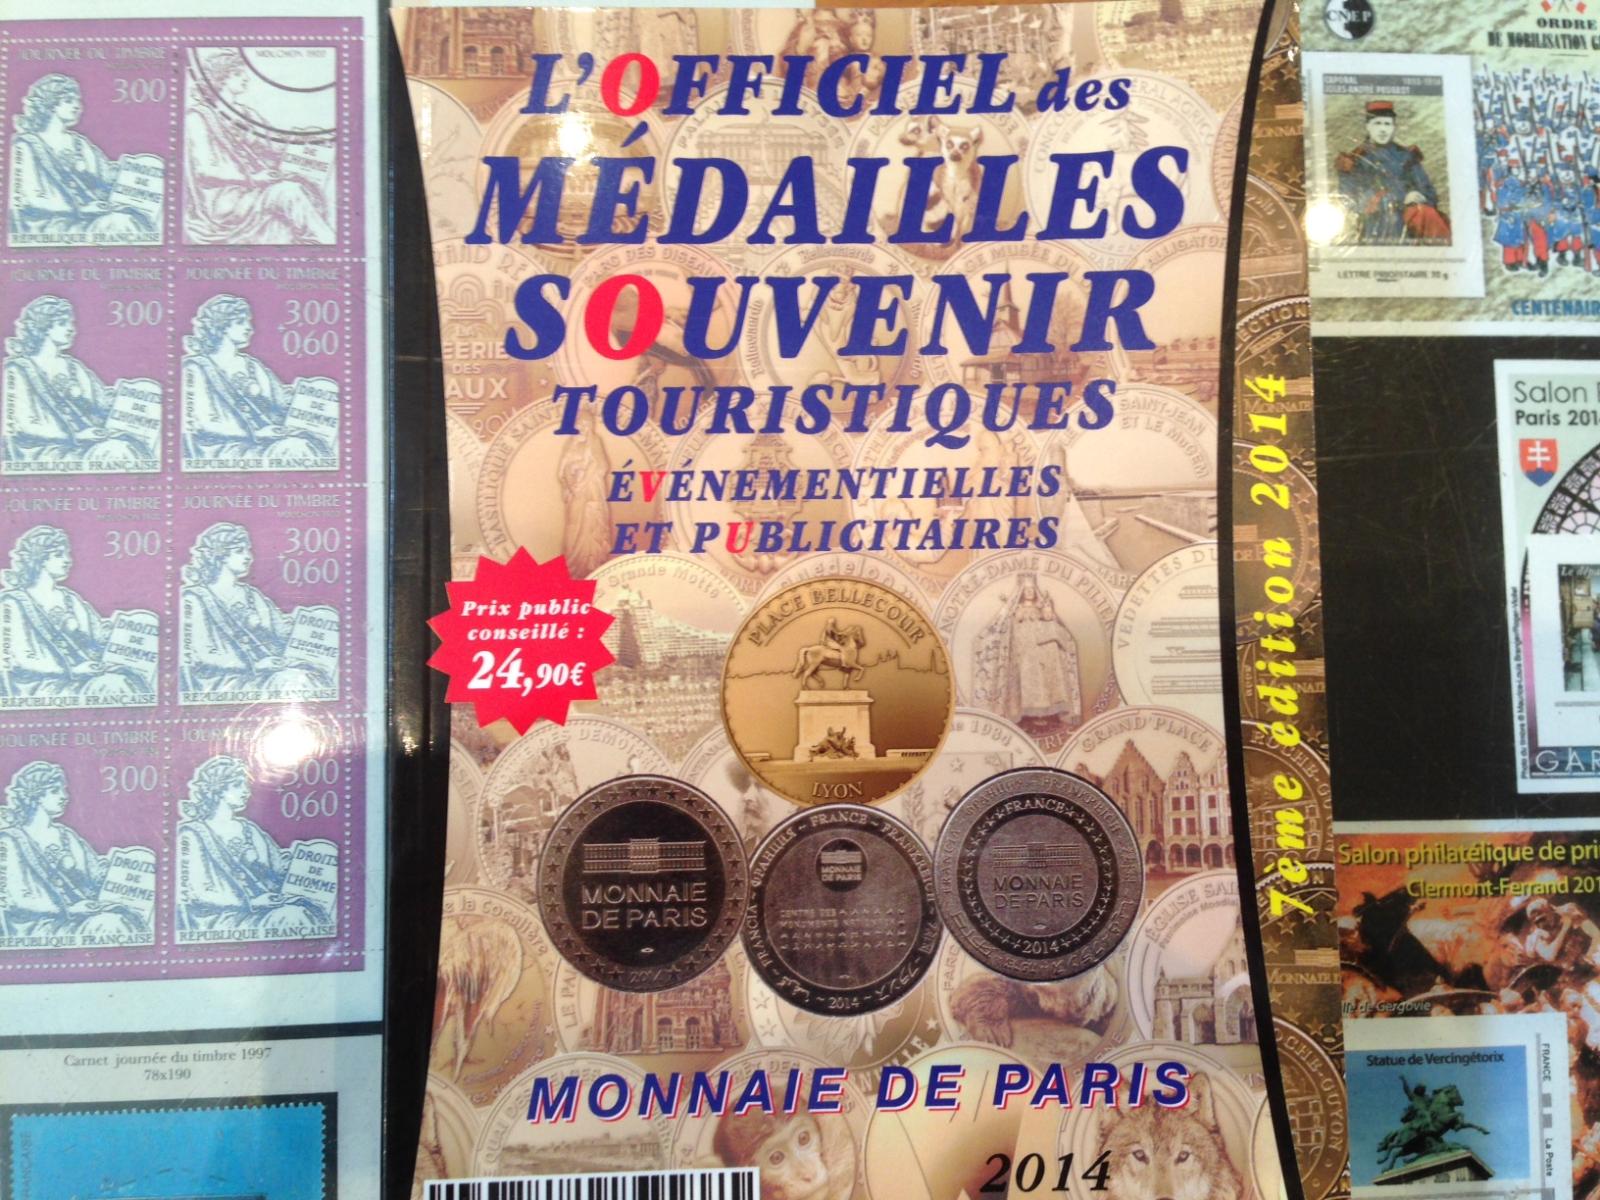 L'Officiel des médailles Souvenirs Touristiques Ren'Collection à Rennes